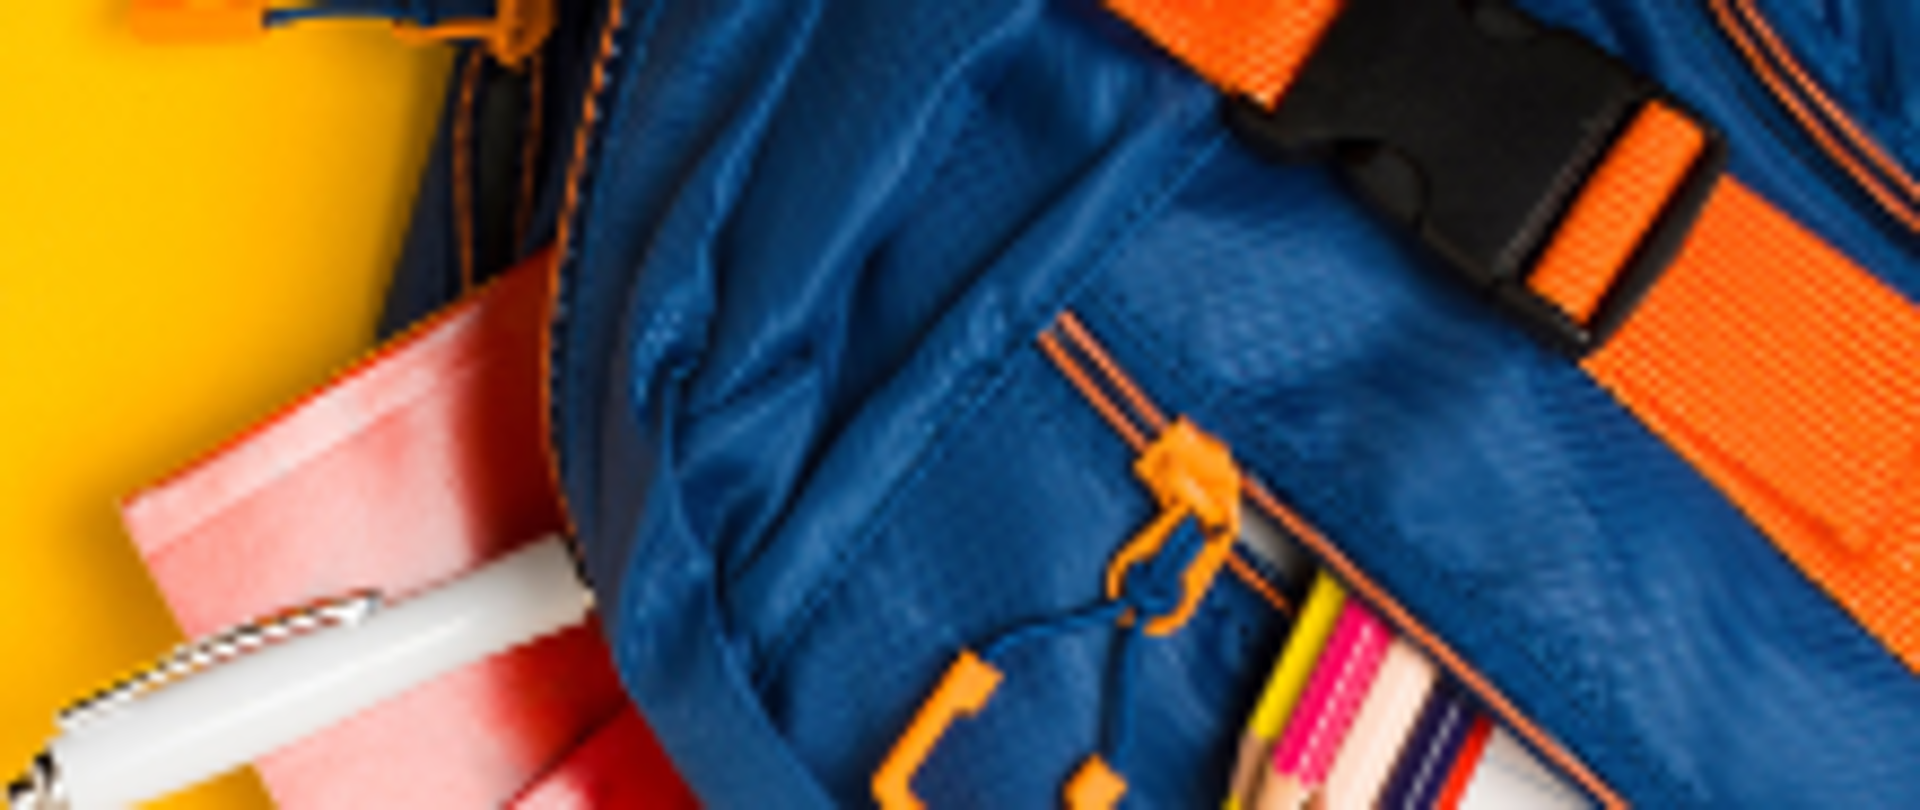 Plecak z przyborami szkolnymi